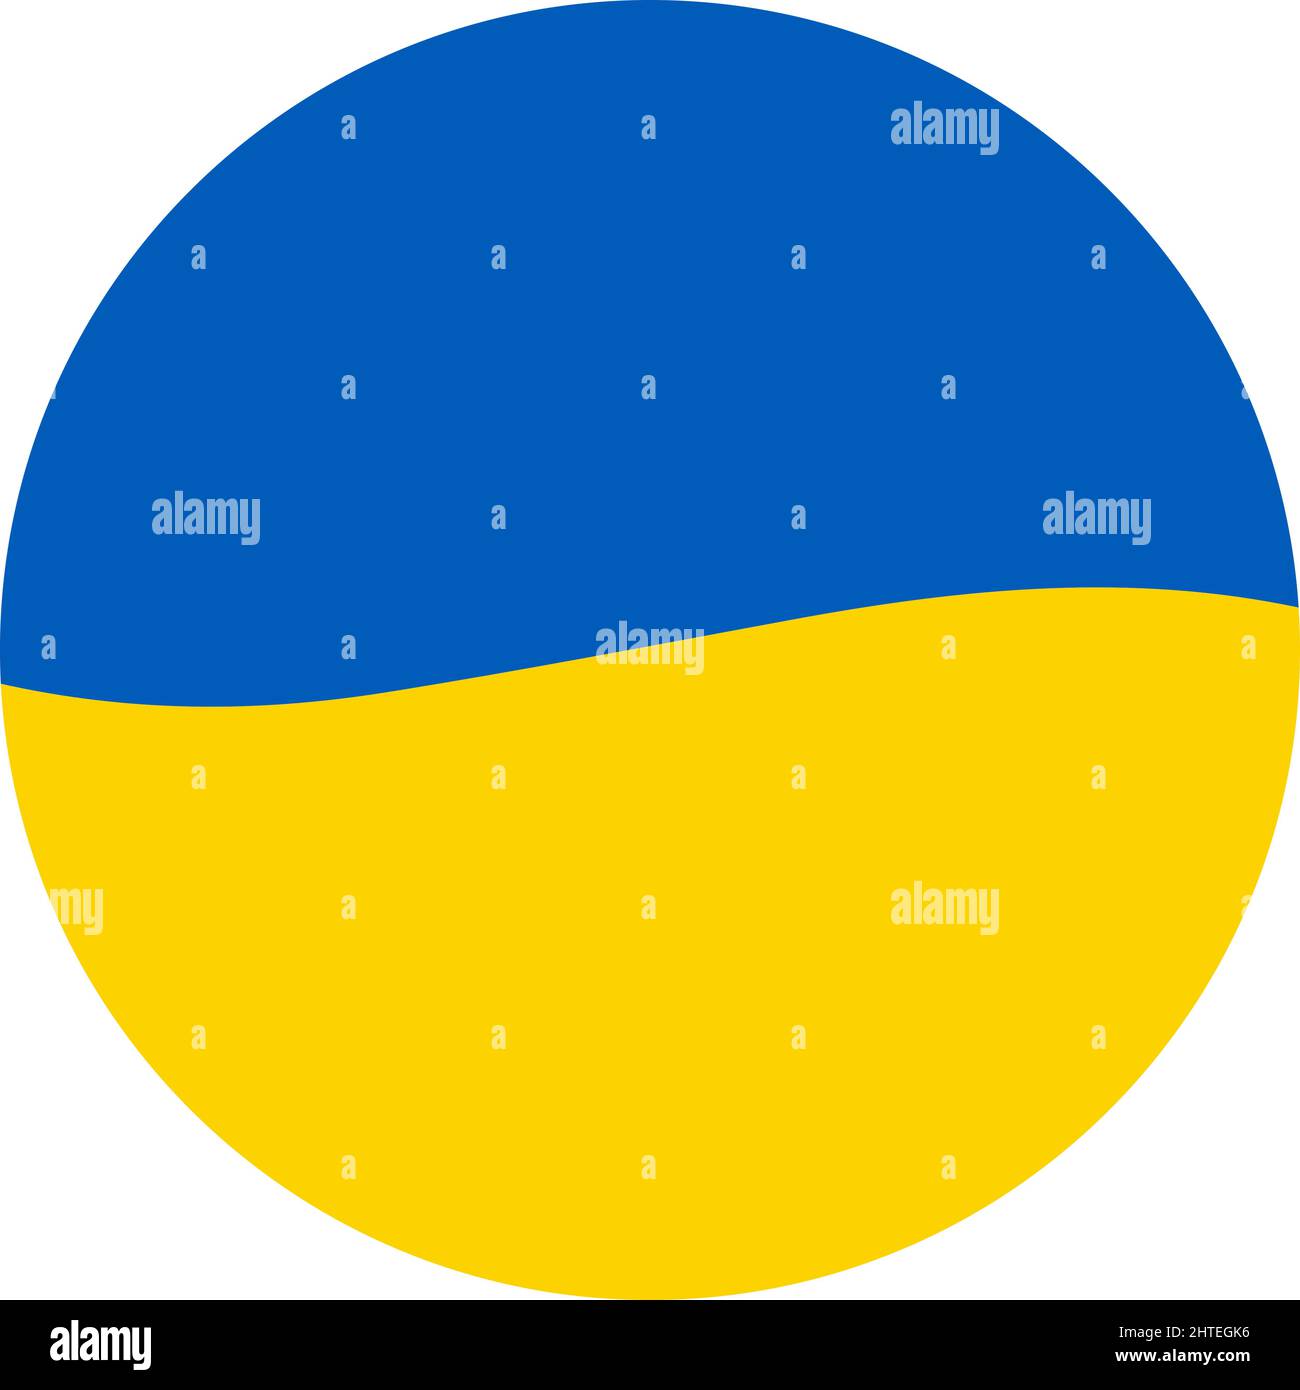 Bandiera Ucraina blu gialla in cerchio. Salvare il concetto di Ucraina. Vettore ucraino simbolo, icona, pulsante.-SupplementalCategories+=immagini Illustrazione Vettoriale